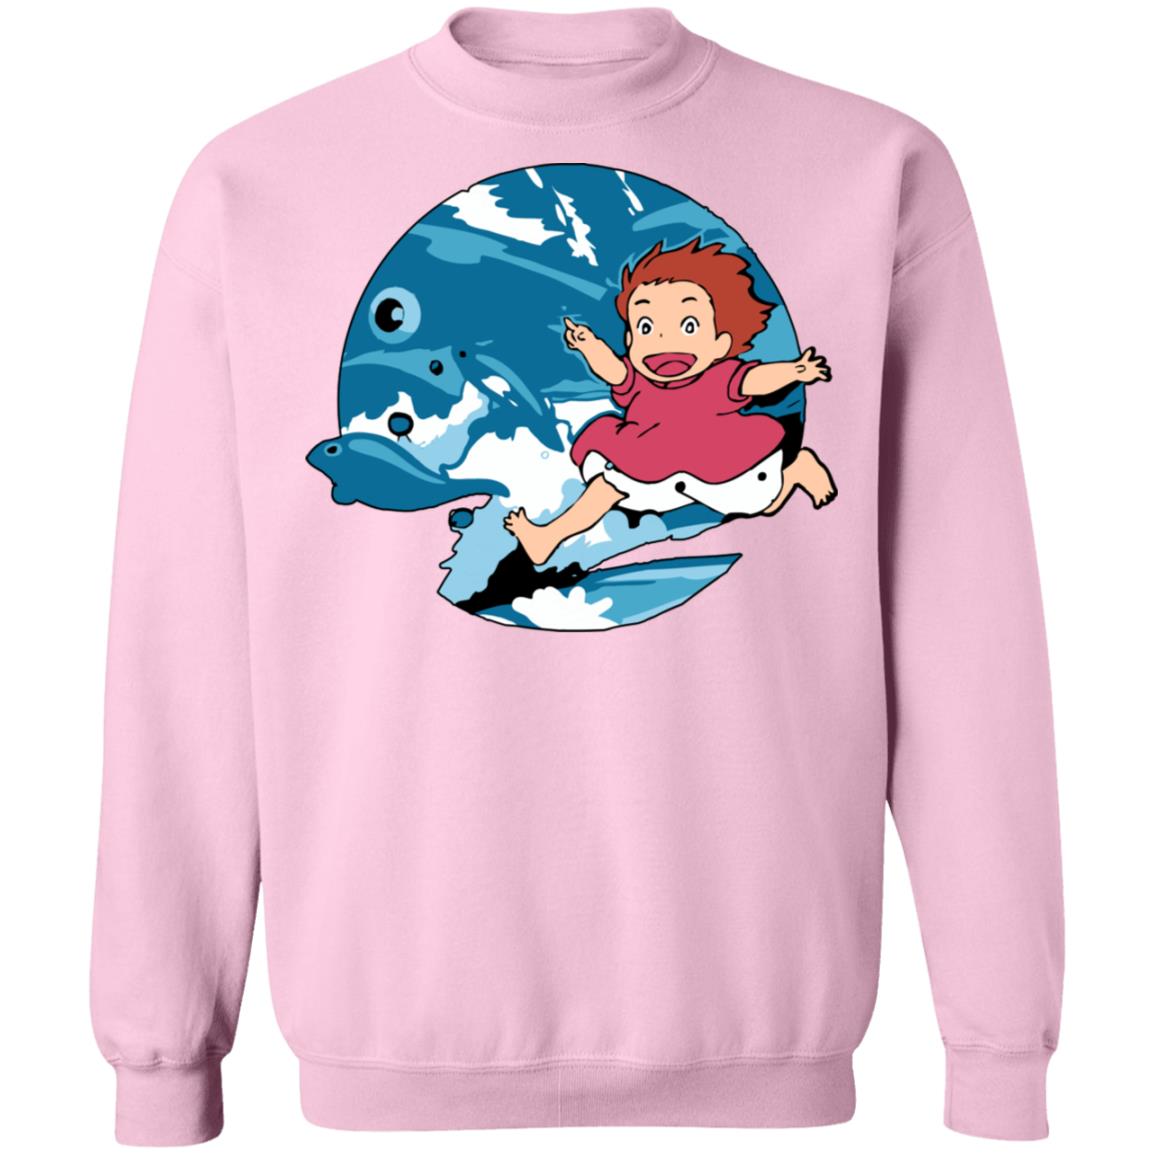 Ghibli Studio Ponyo On The Waves Sweatshirt Unisex